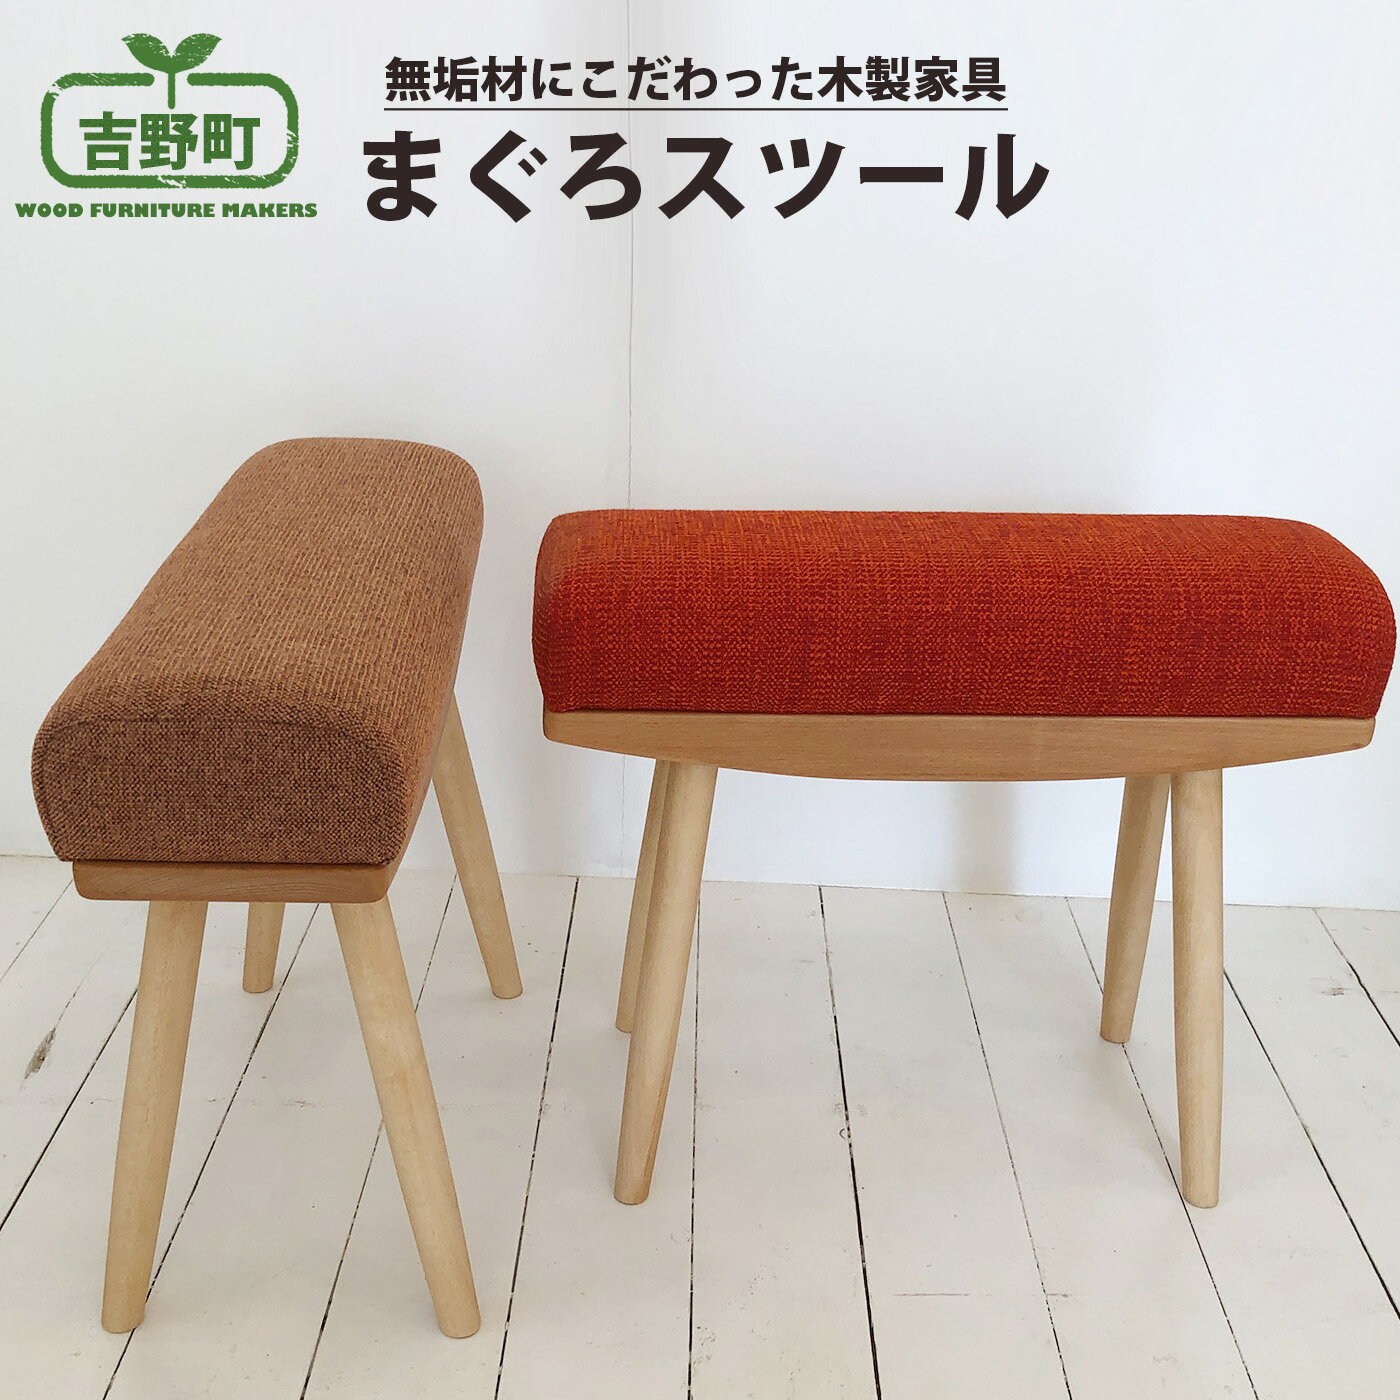 まぐろスツール 4種 から選べる( 赤・ グレー・ 緑 ・茶 )椅子 チェア 奈良県 吉野町 家具